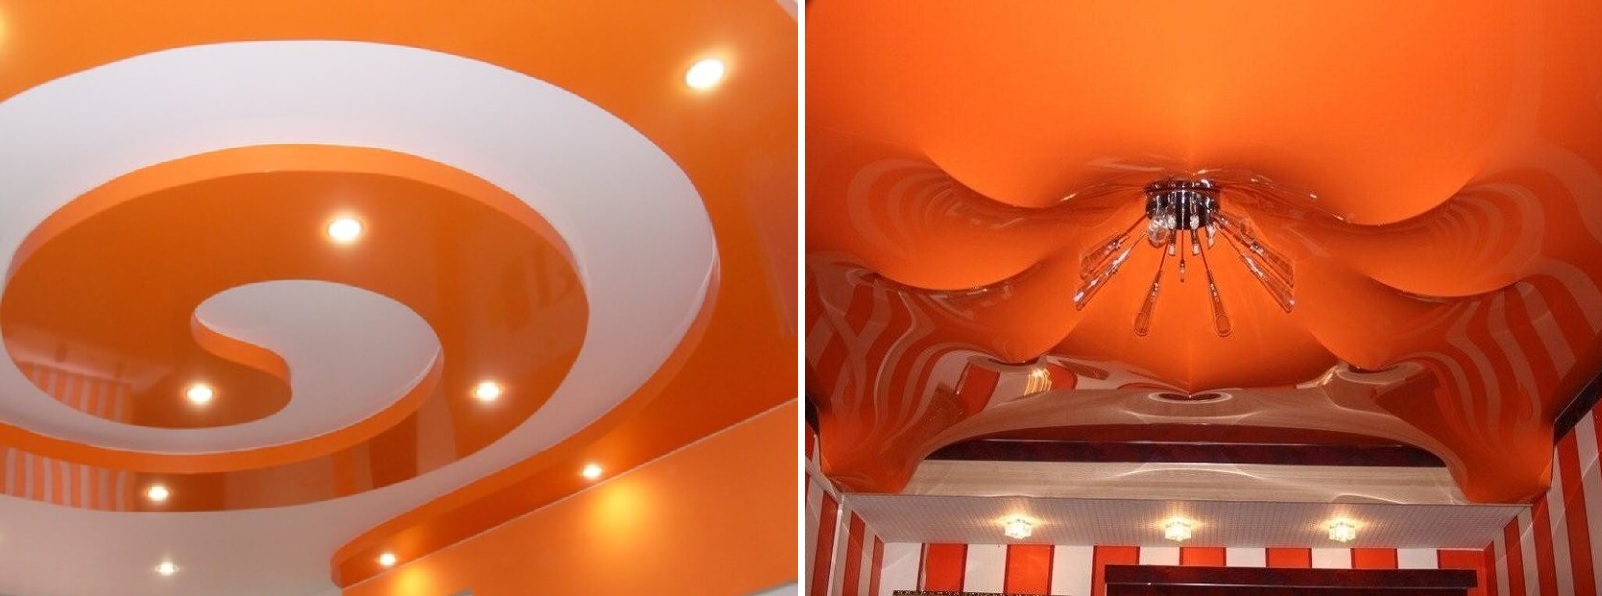 Оранжевые натяжные потолки по выгодным ценам с установкой от компании Alezi